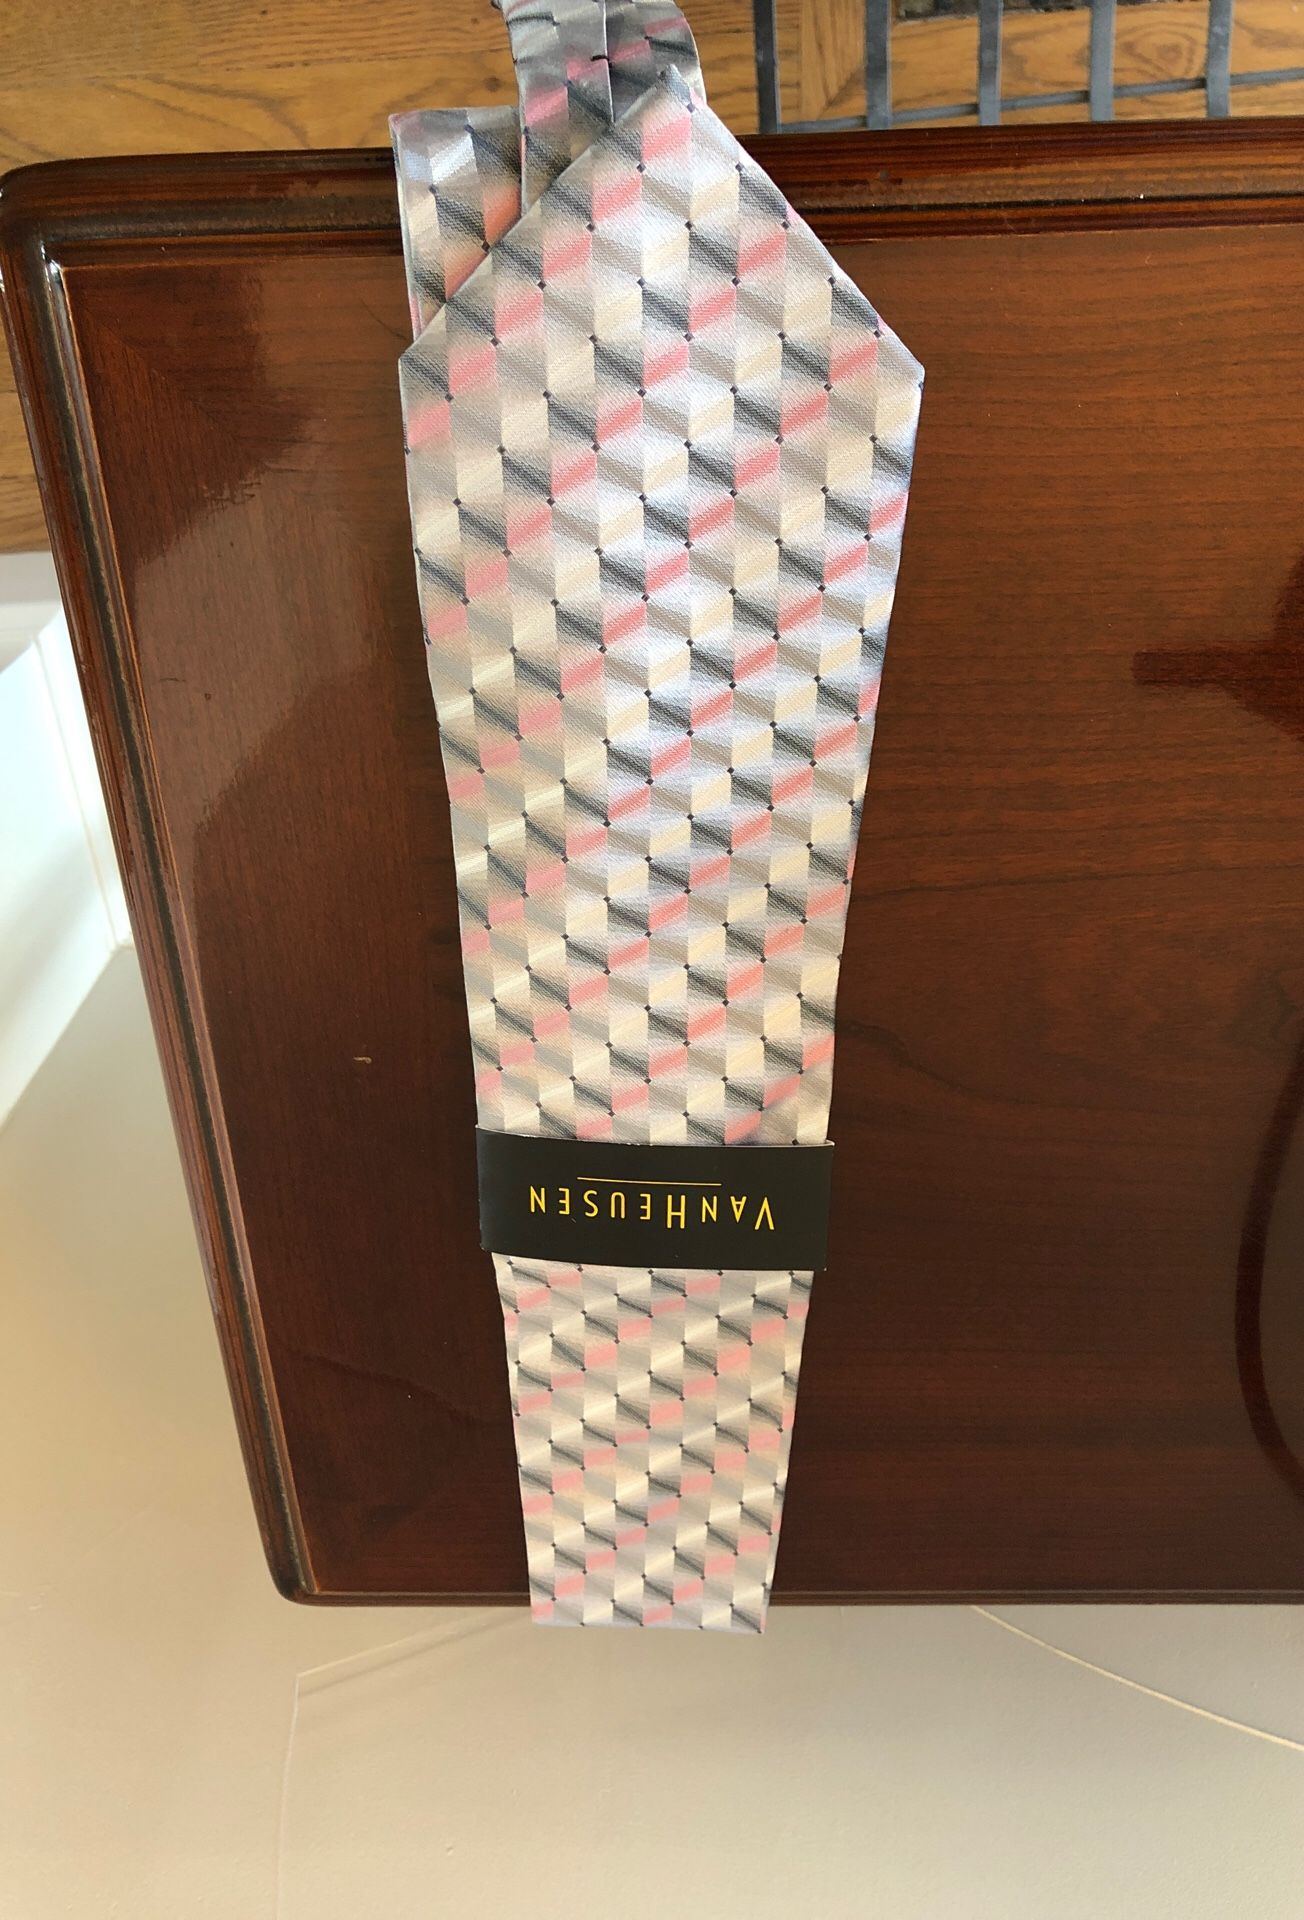 Brand new Van Heusen Tie pink and gray